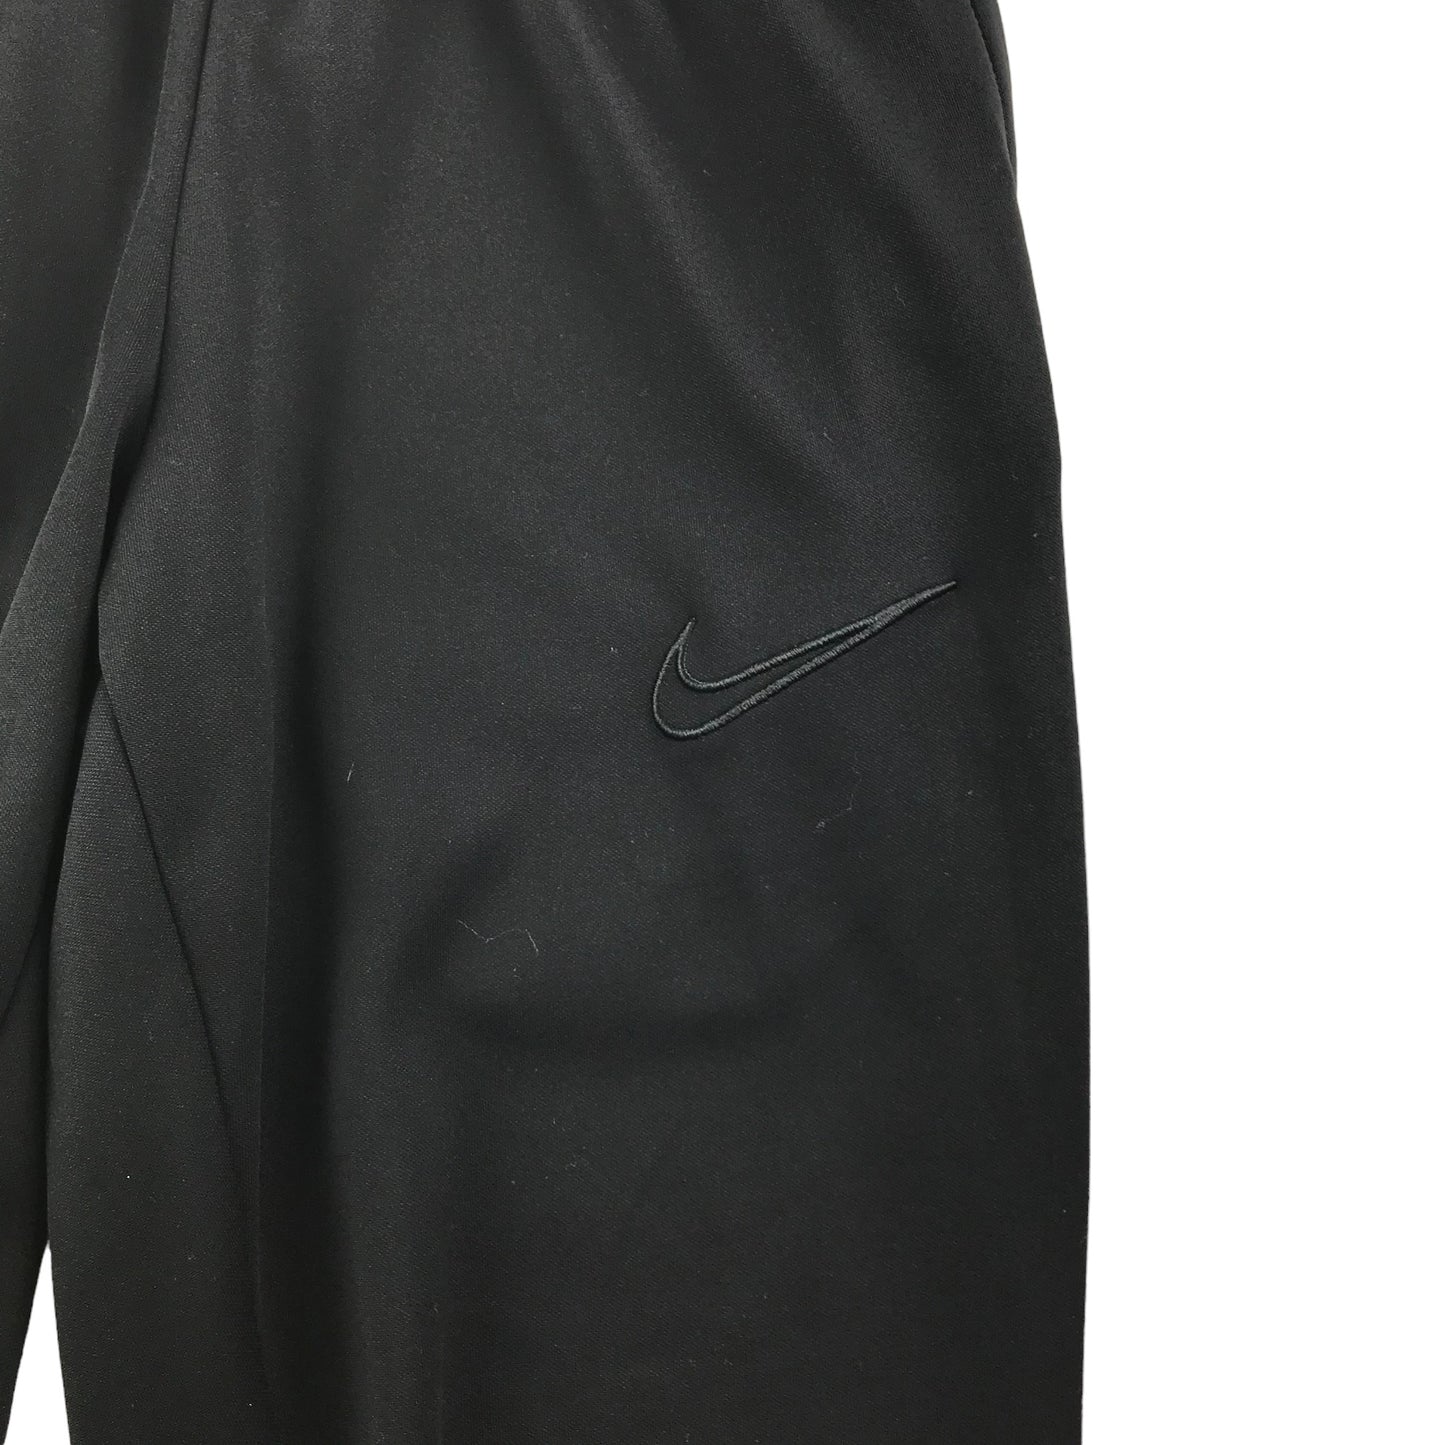 Nike Joggers Size XS Black Plain Slim Legs